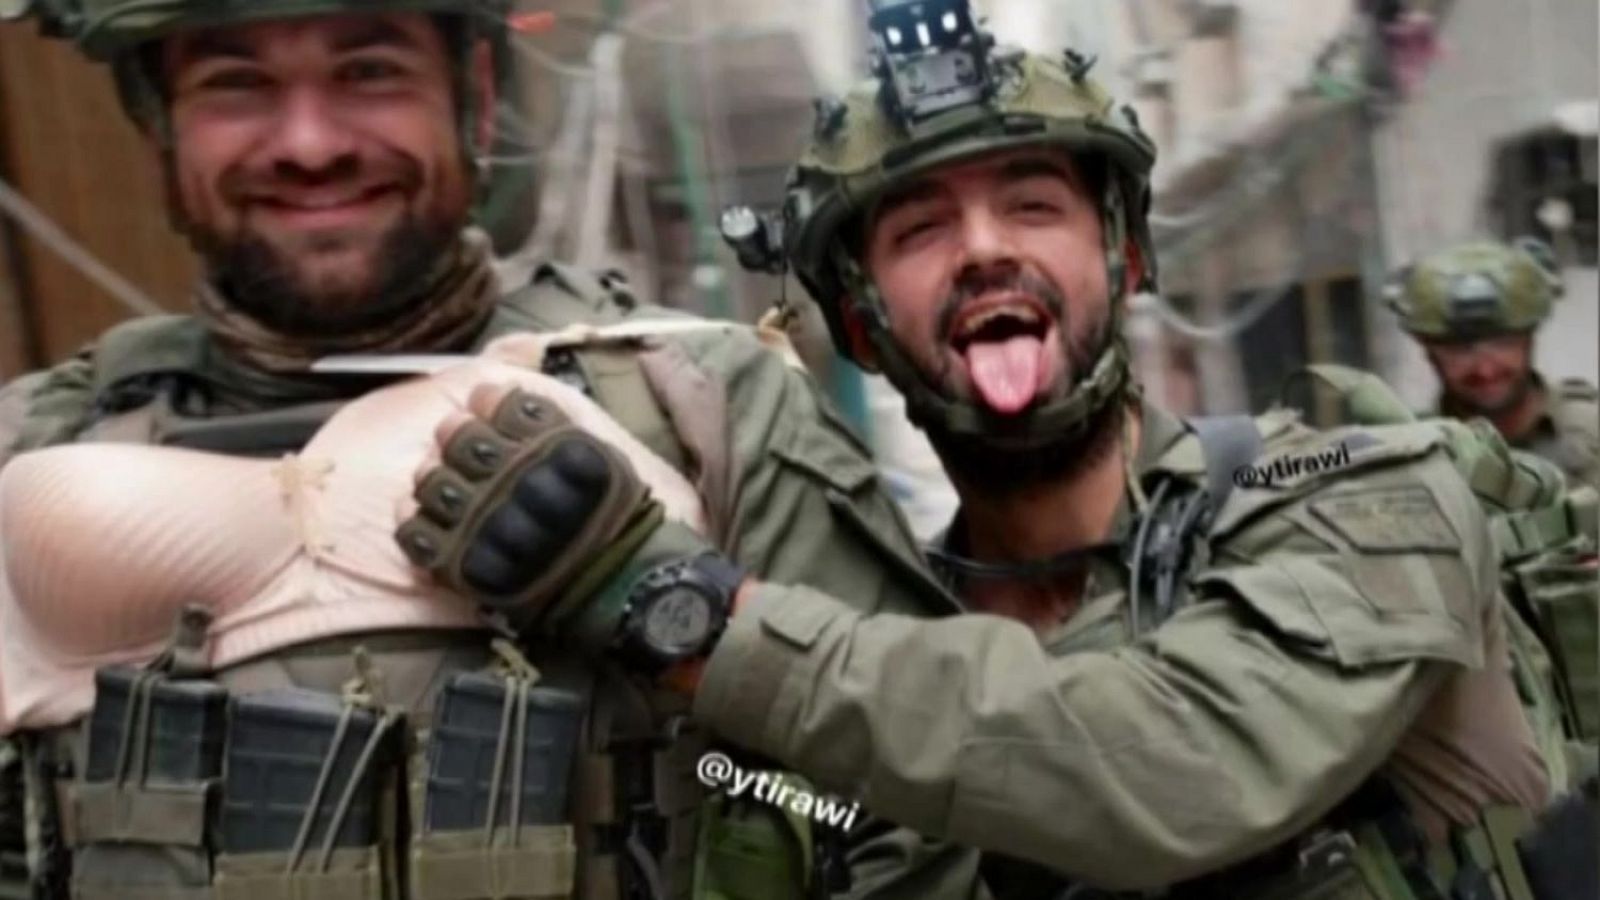 Burlas e imágenes humillantes de palestinos: los polémicos vídeos de soldados israelíes en Gaza